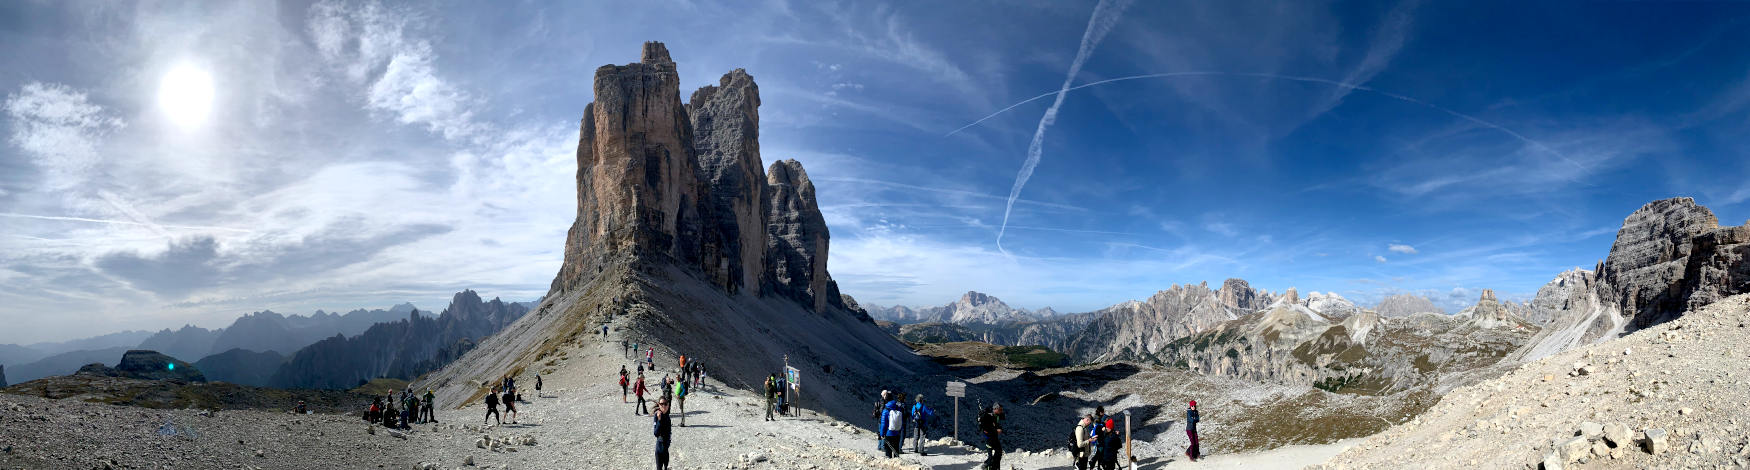 Panoramabild, in der Mitte die drei Zinnen, an ihrem Fuß Menschen. Im Hintergrund weitere Berge. 